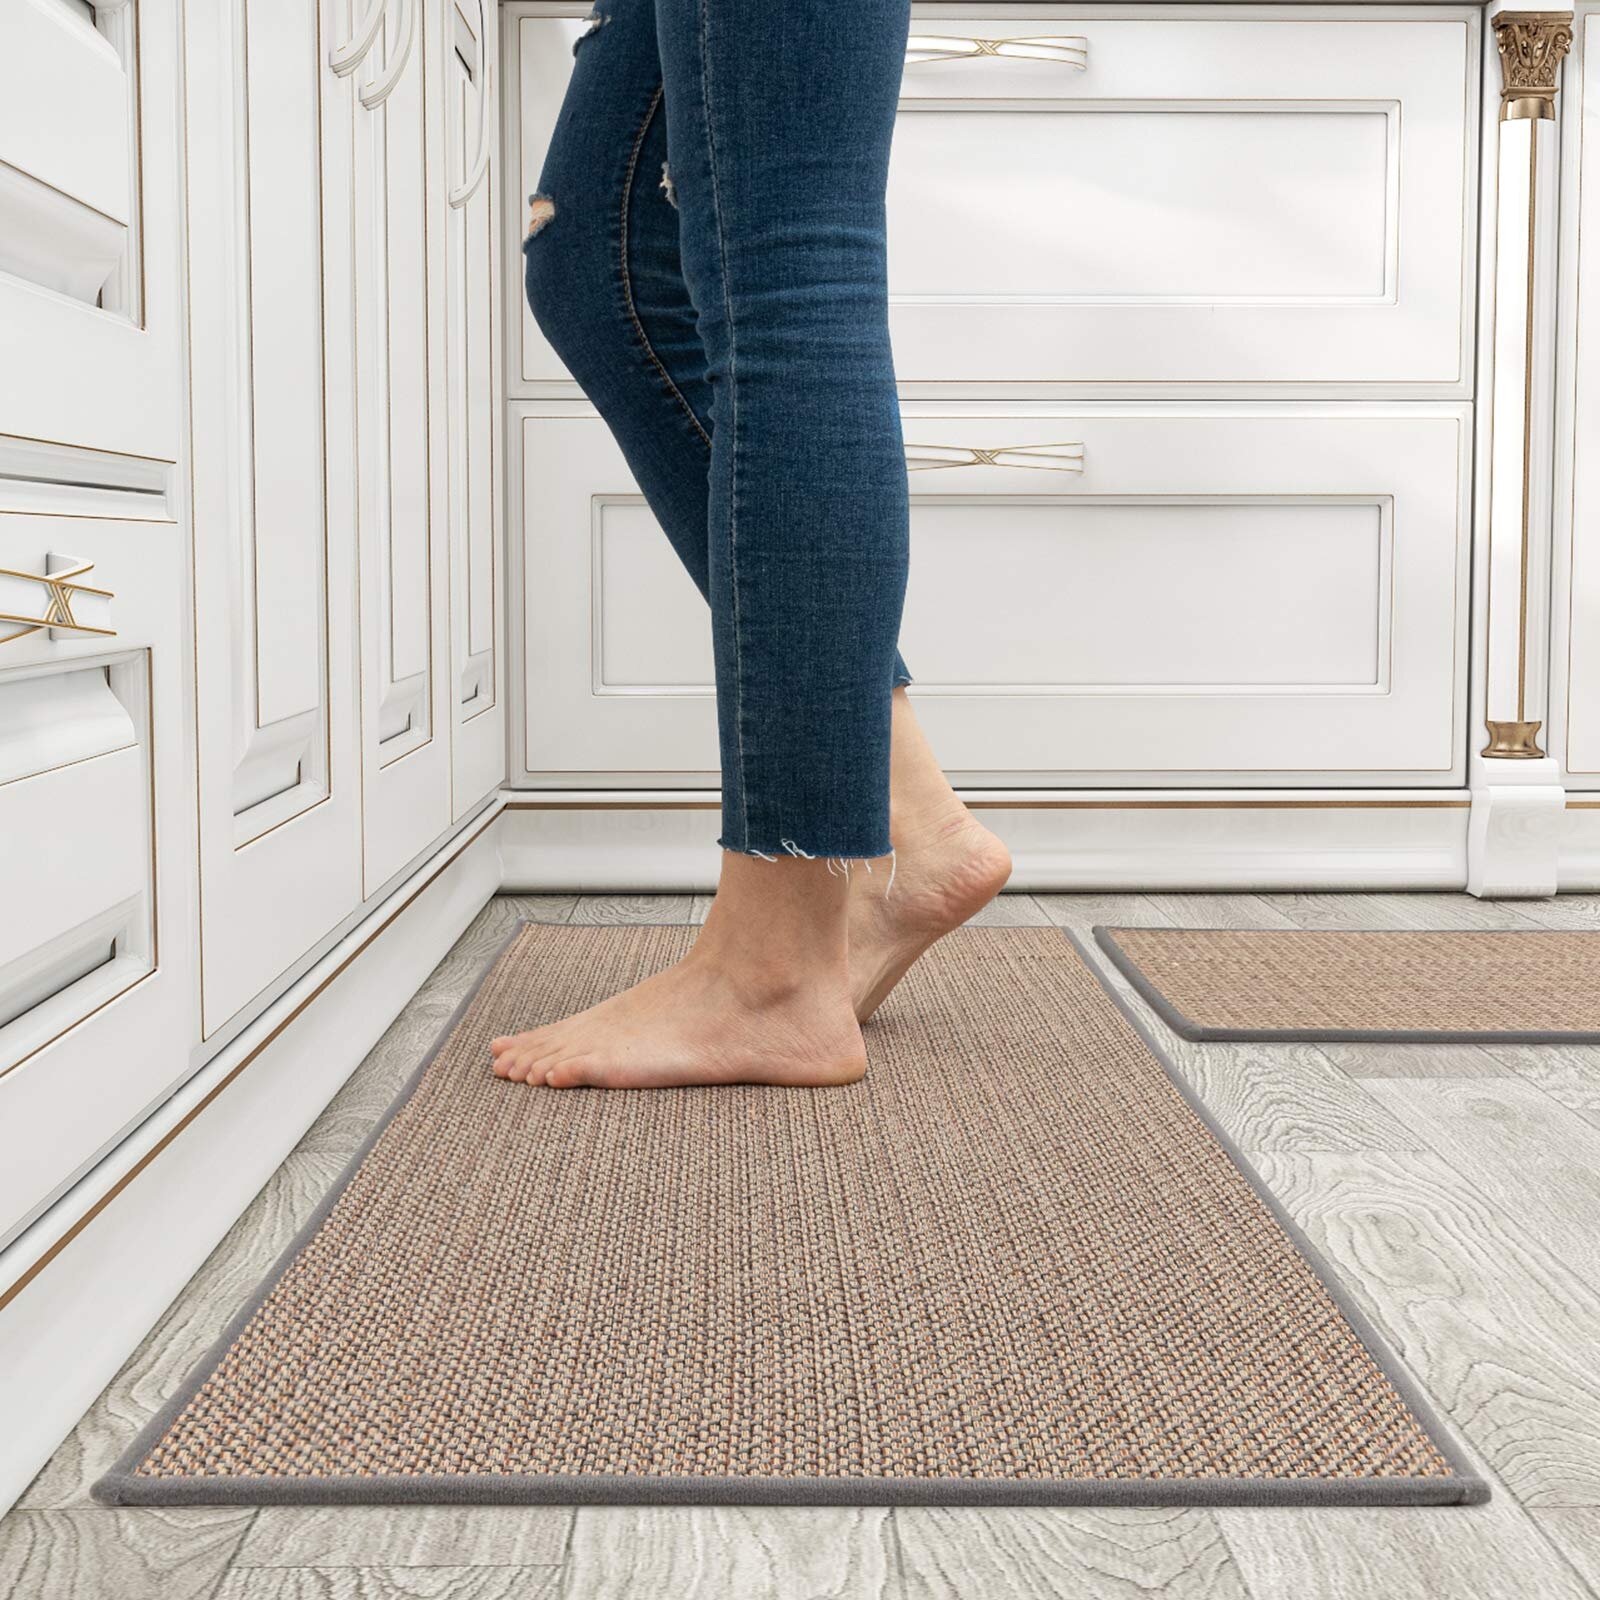 Flower Non-slip Floor Mats Washable Home Kitchen Bath Door Mat Area Rug Carpet 